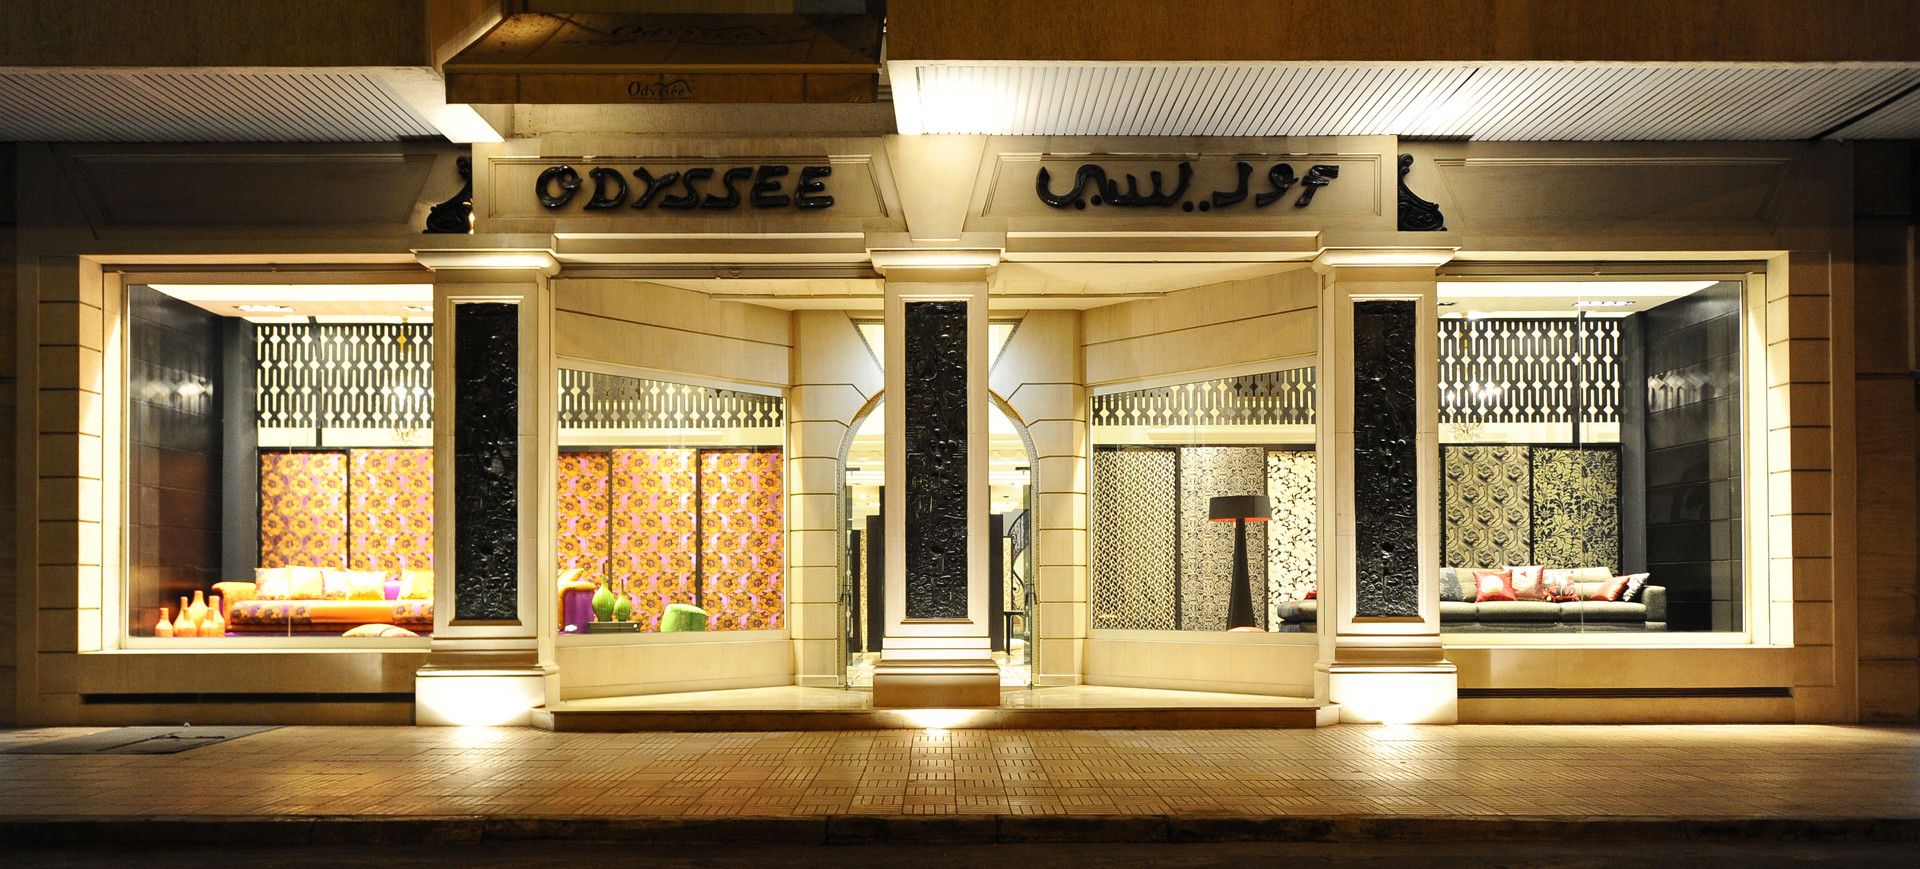 Wisp-Architects- Odysseé Store Casablanca 0